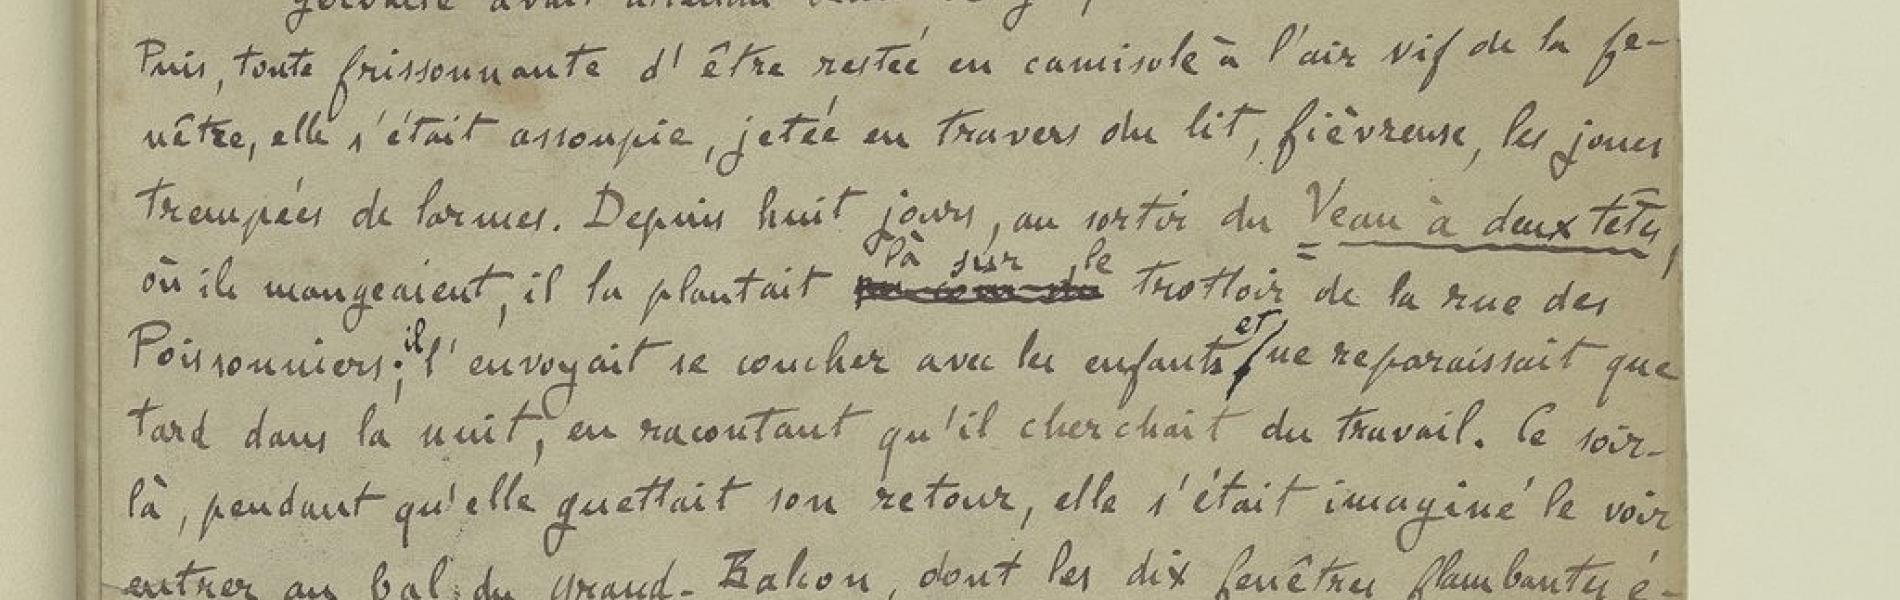 Émile Zola, L'Assommoir. Manuscrit autographe (BnF)